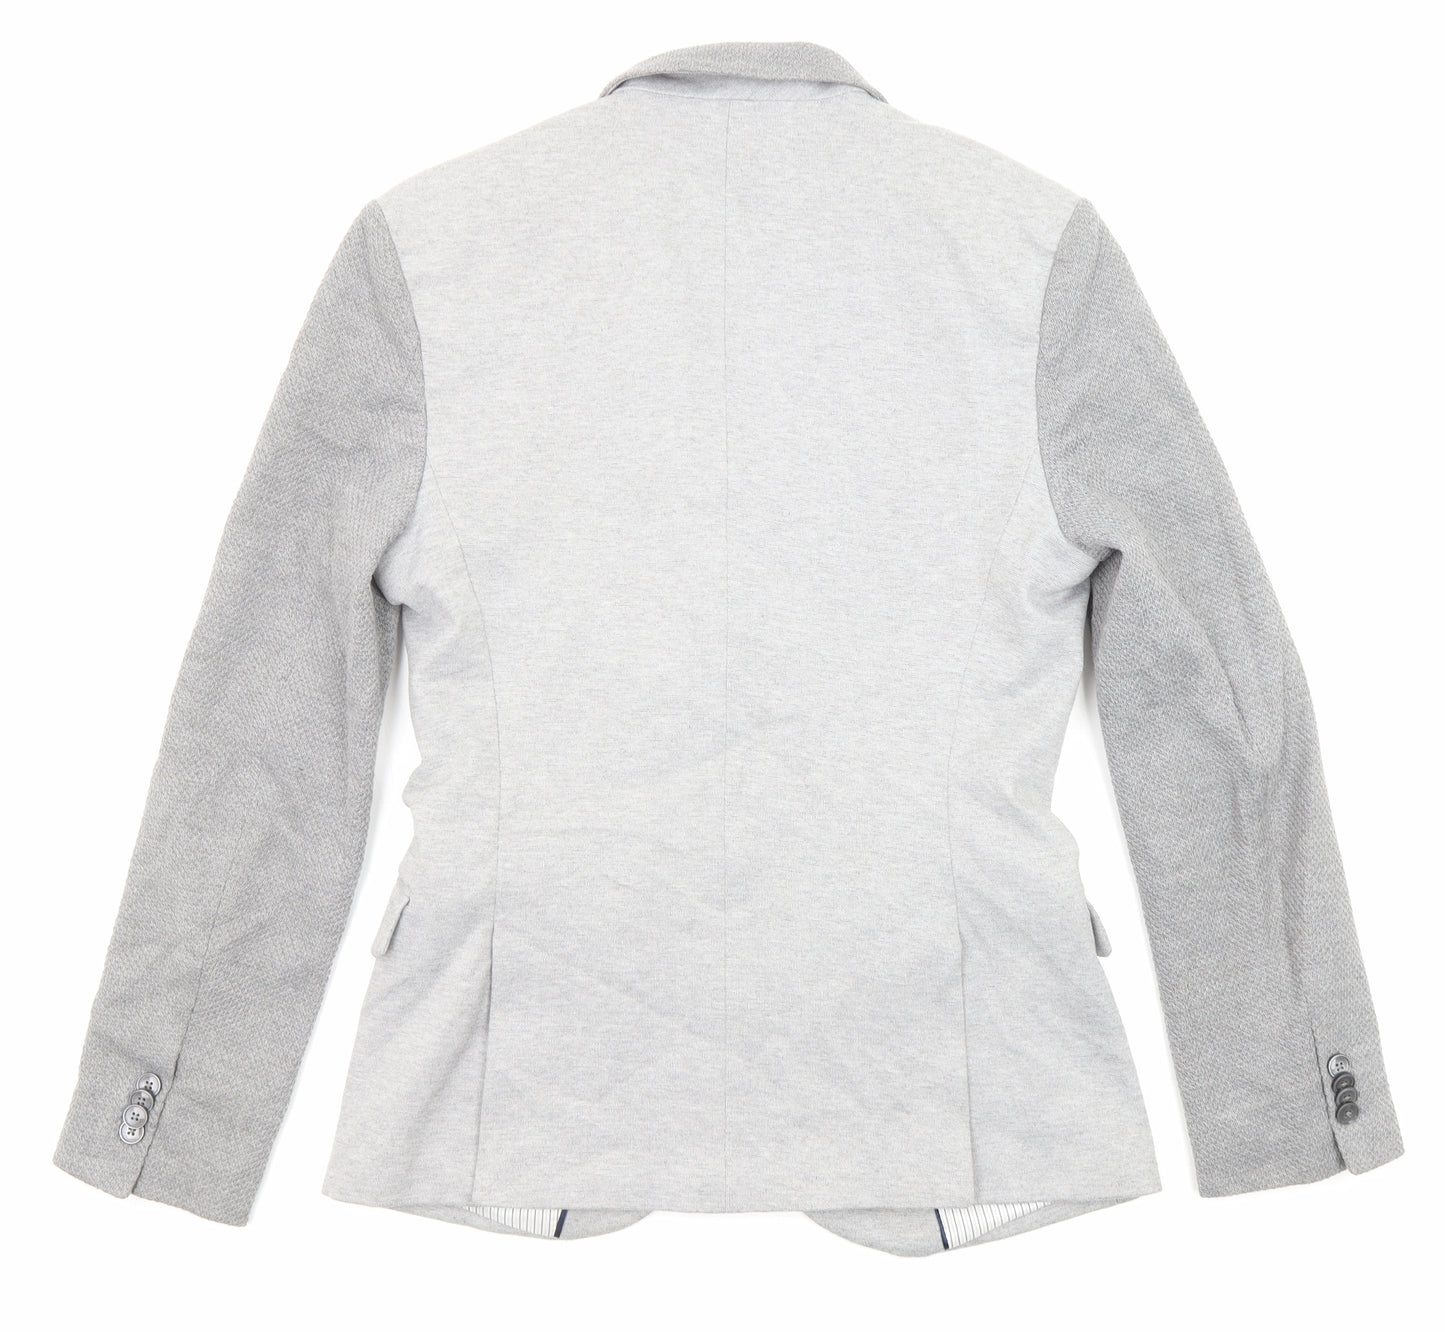 Zara Mens Grey Polyester Jacket Blazer Size 40 Regular